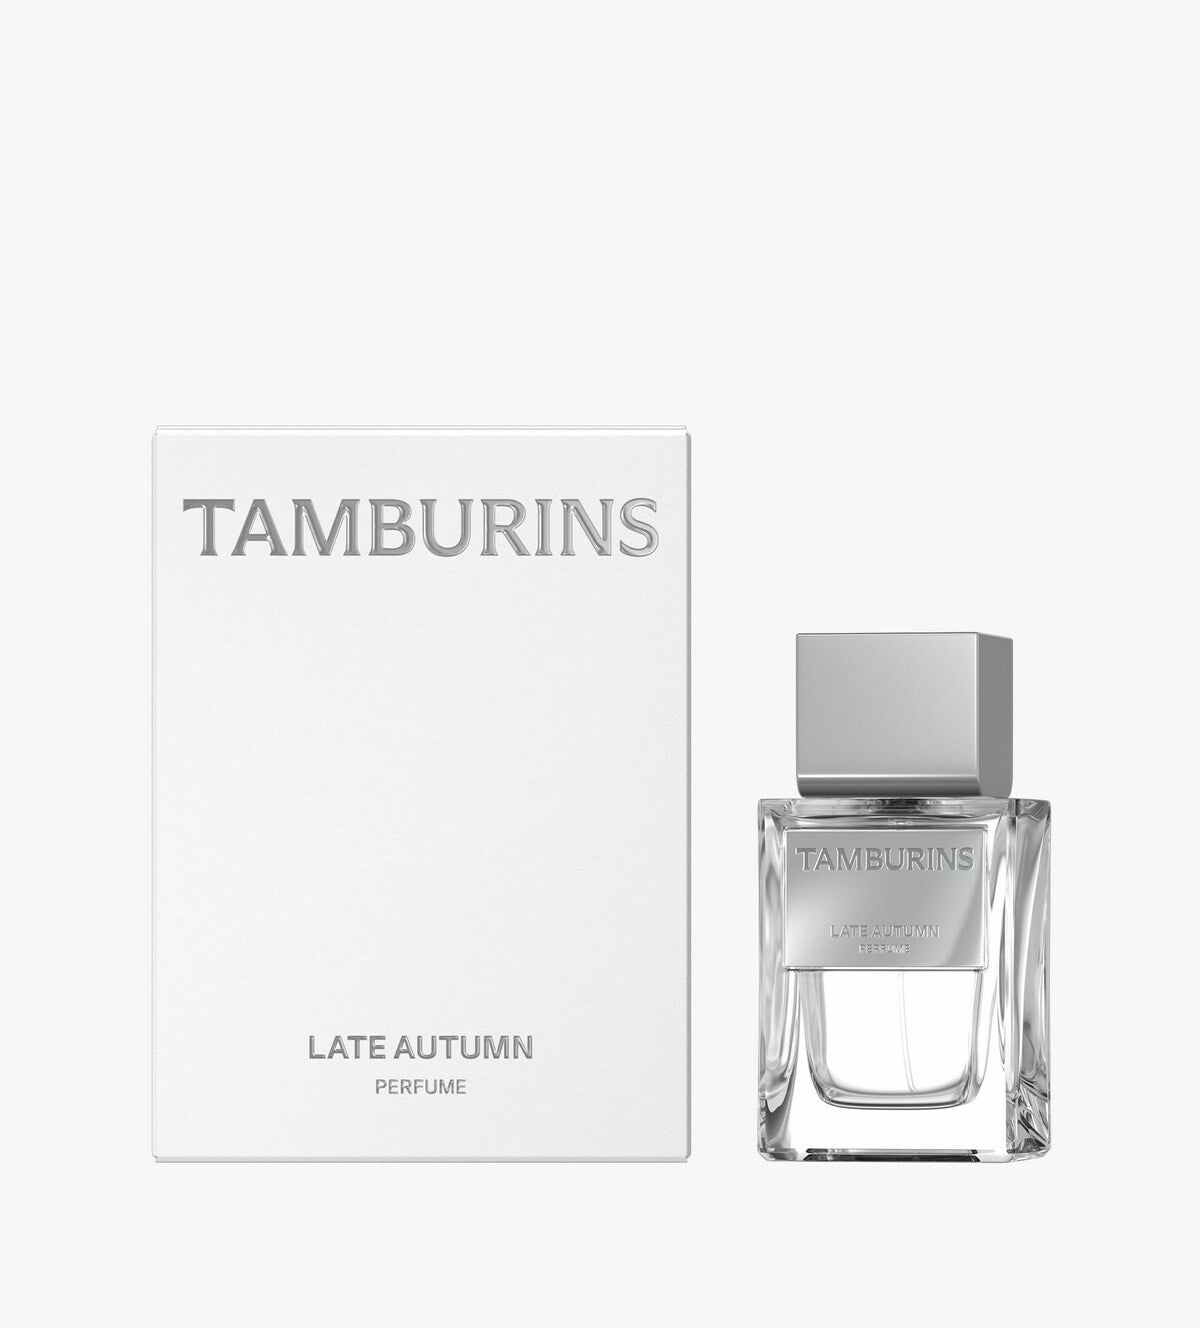 TAMBURINS Parfüm spät Herbst 11ml / 50 ml